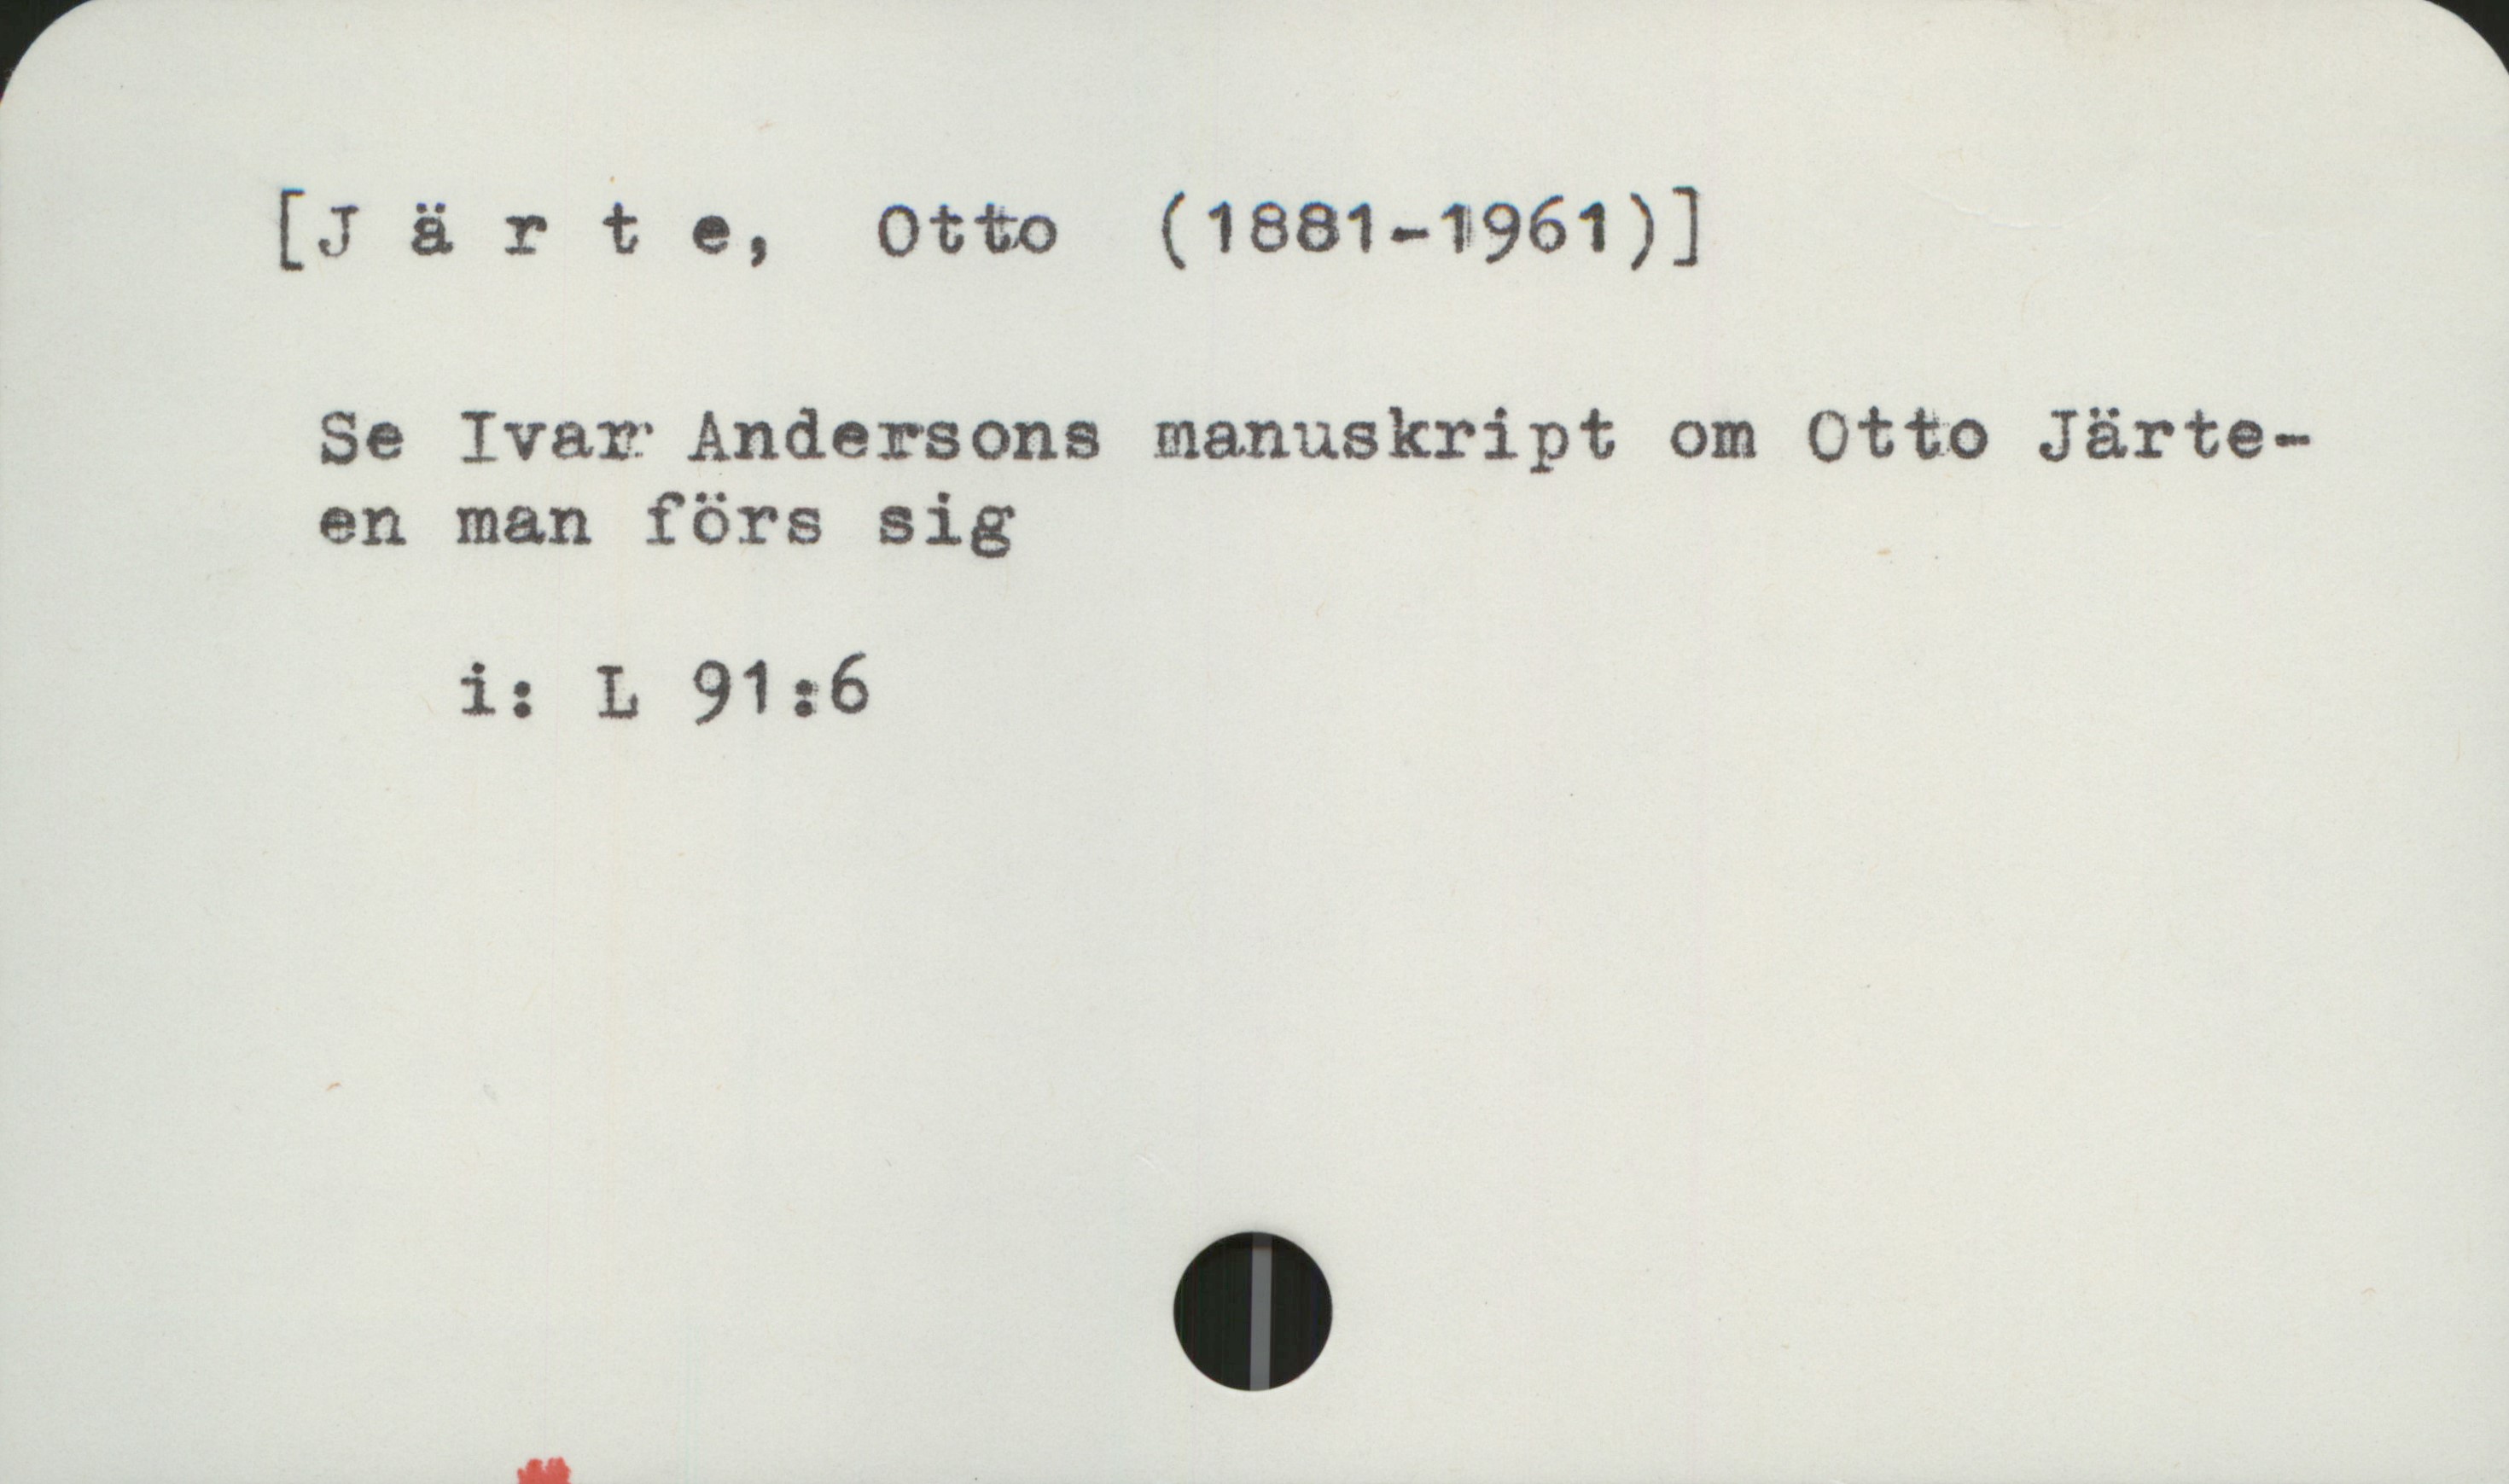 Järte, Otto (1881-1961) [Järte, Otto (1881-1961)]

Se Ivar Andersons manuskript om Otto Järte -
en man för sig

       i:  L 91:6